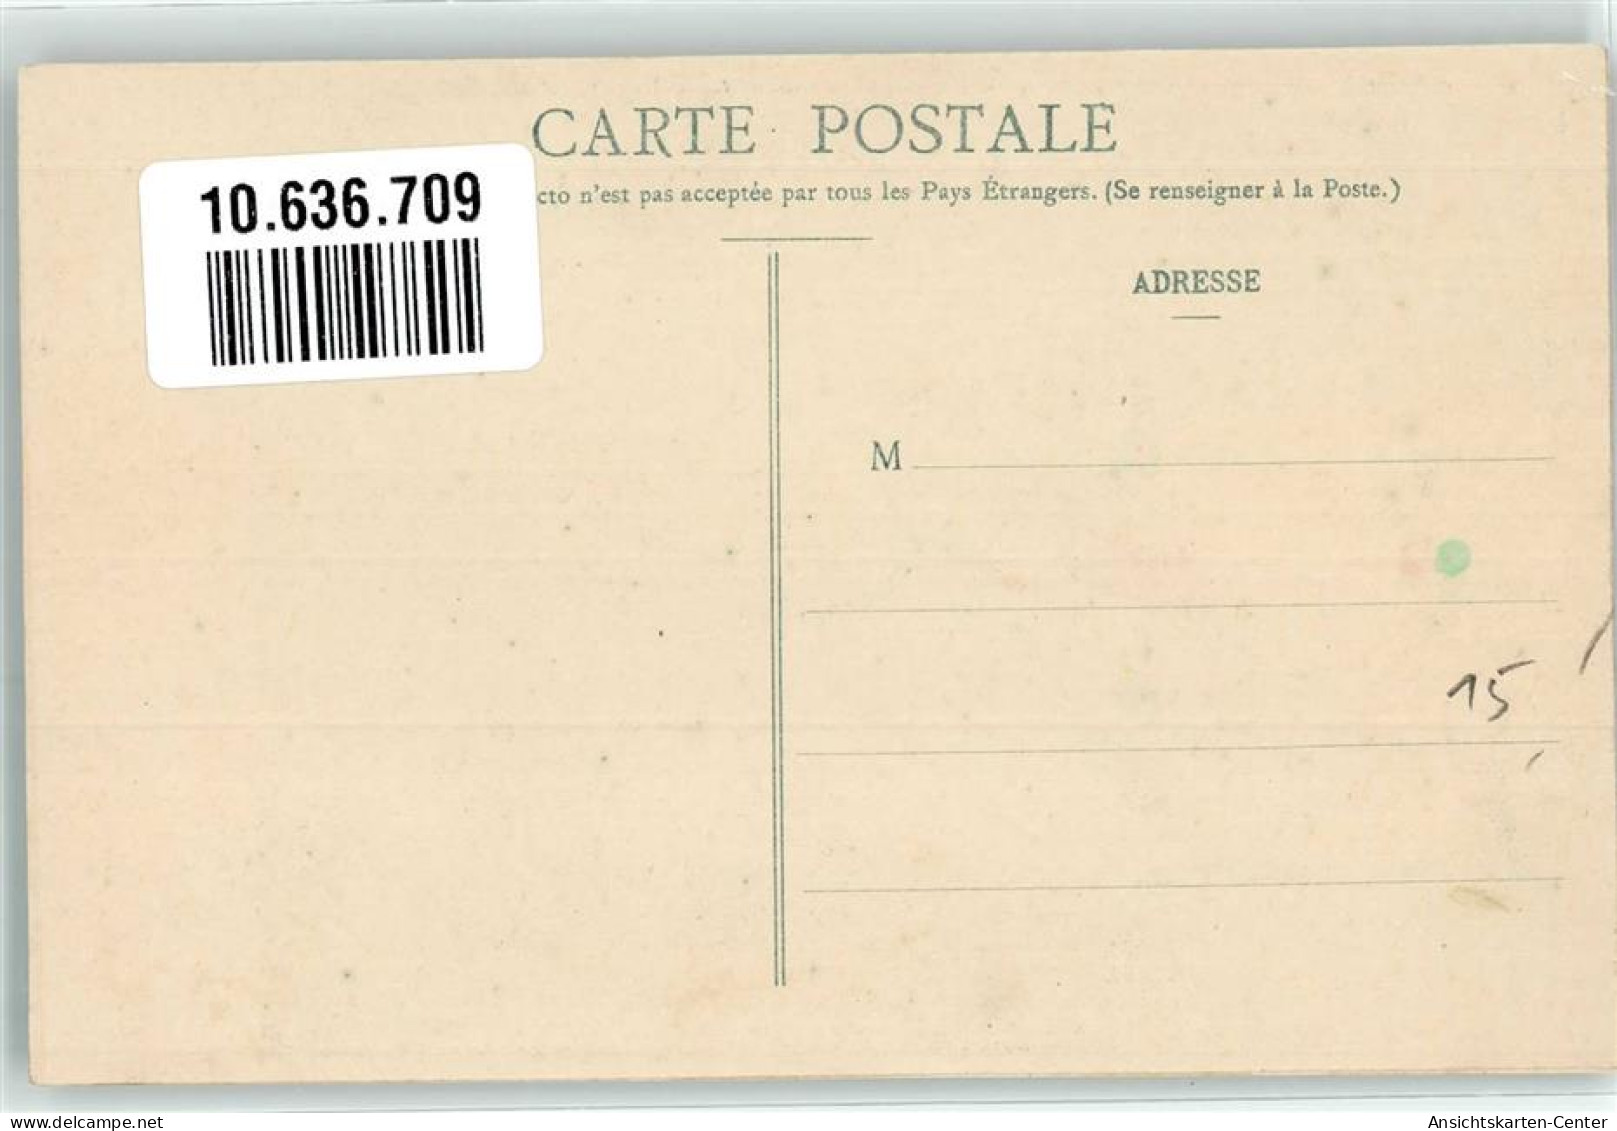 10636709 - Nr. 1 Les Uniformes Du Ier Empire , Les 7e Leger En 1809  Sapeur  Sign. Eugene Louis  Bucquoy - Weltkrieg 1914-18